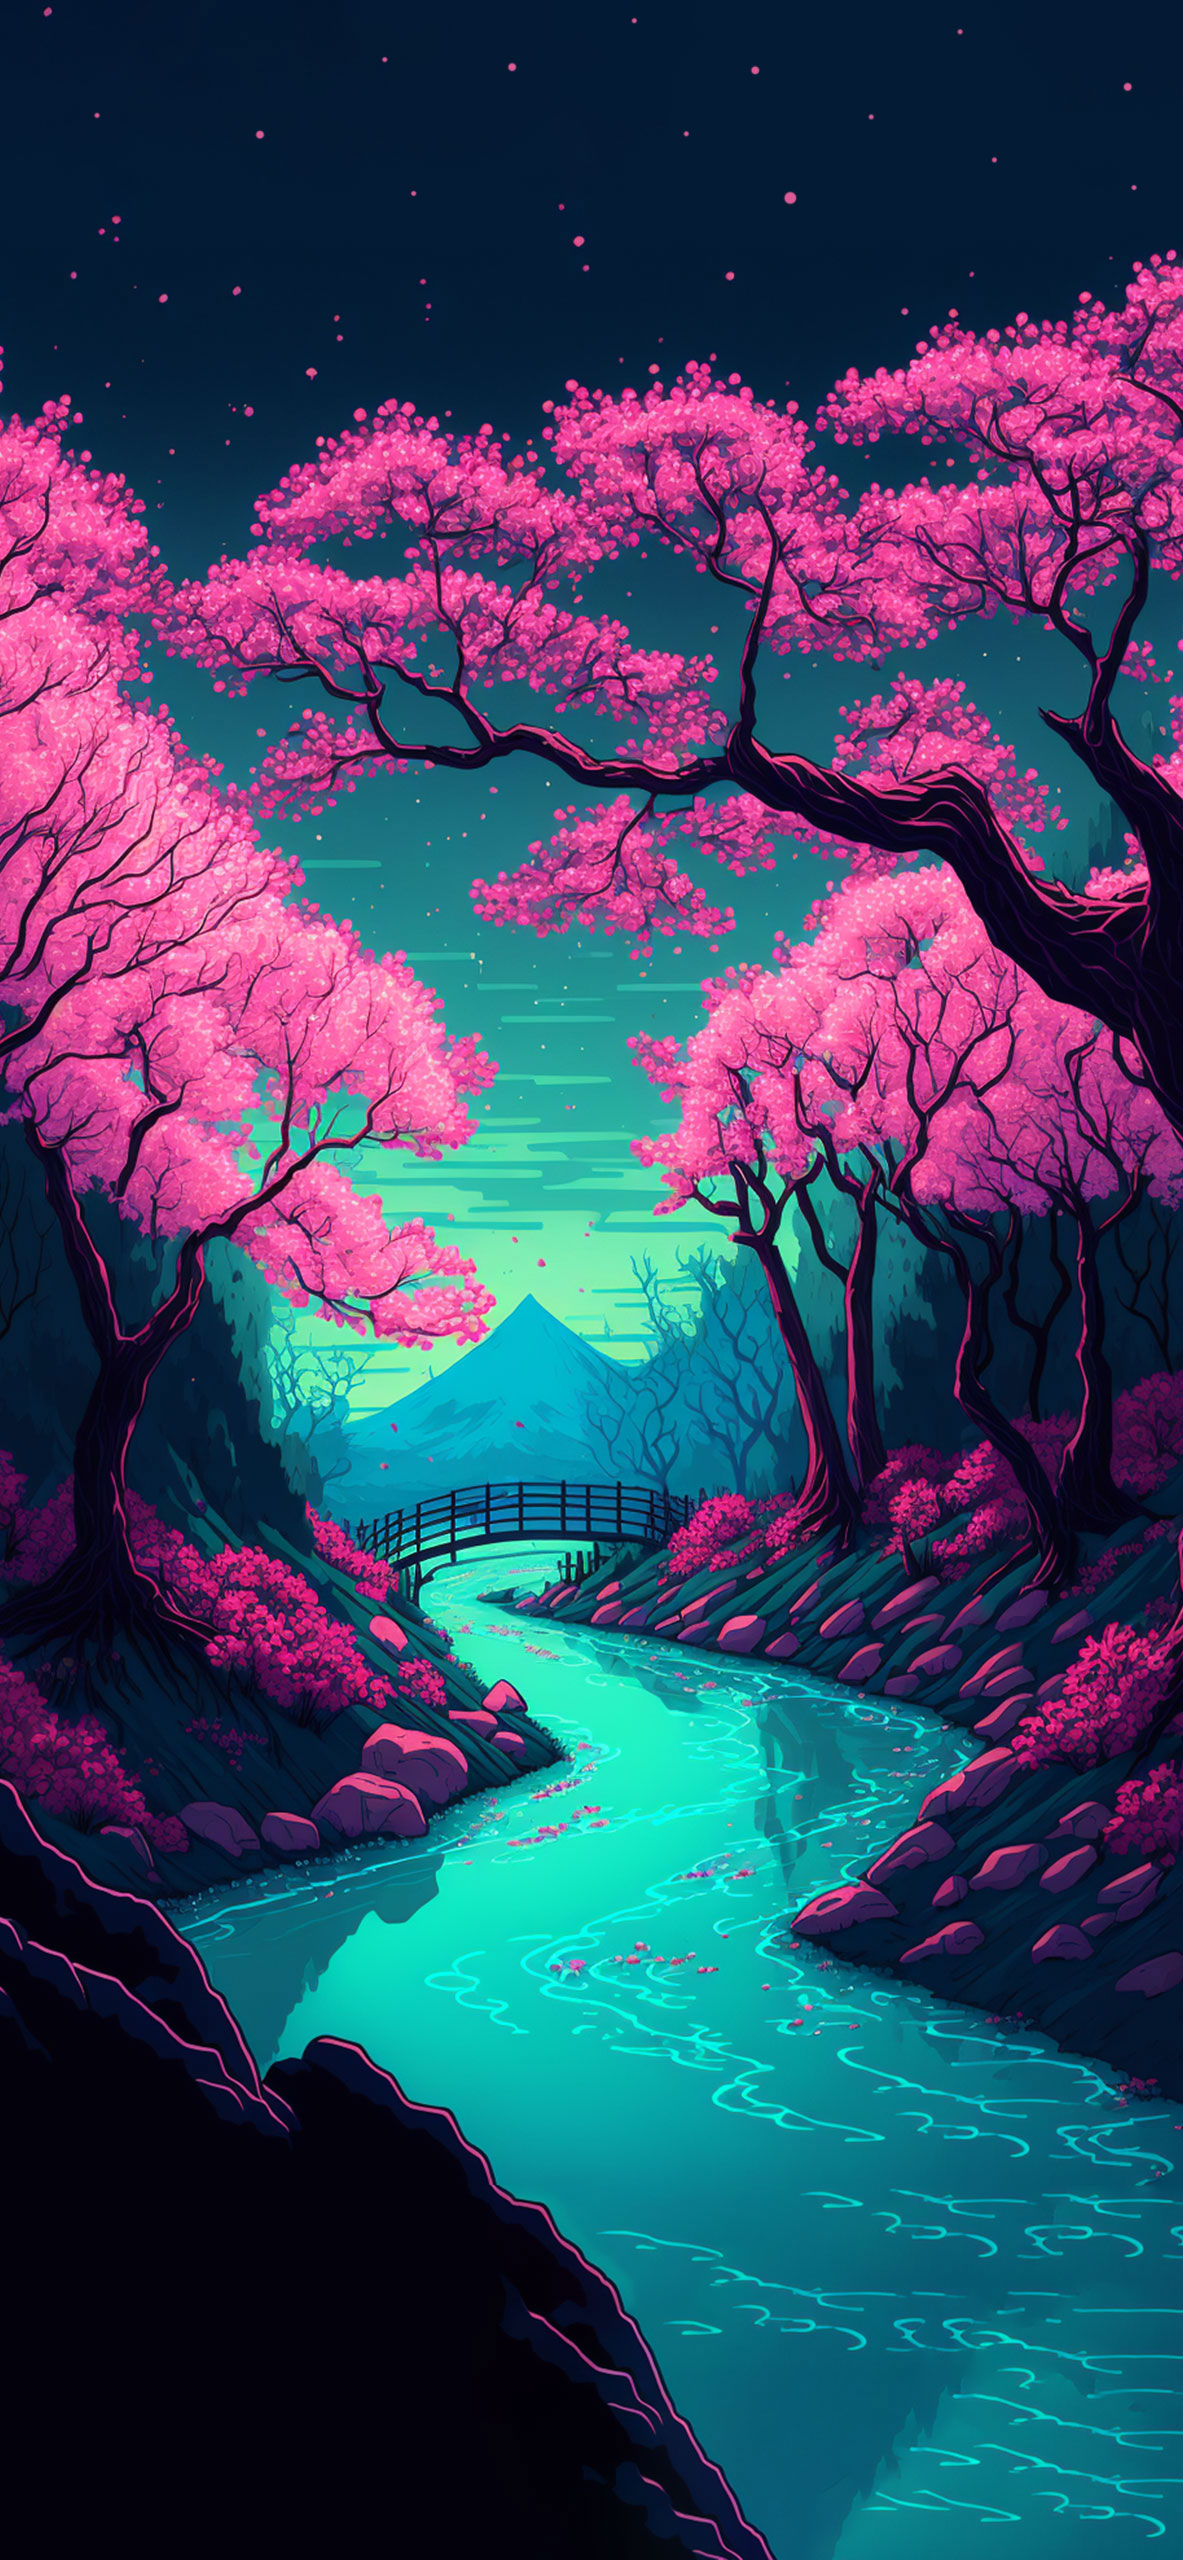 Sakura Forest & River Art Wallpapers - Sakura Aesthetic Wallpaper